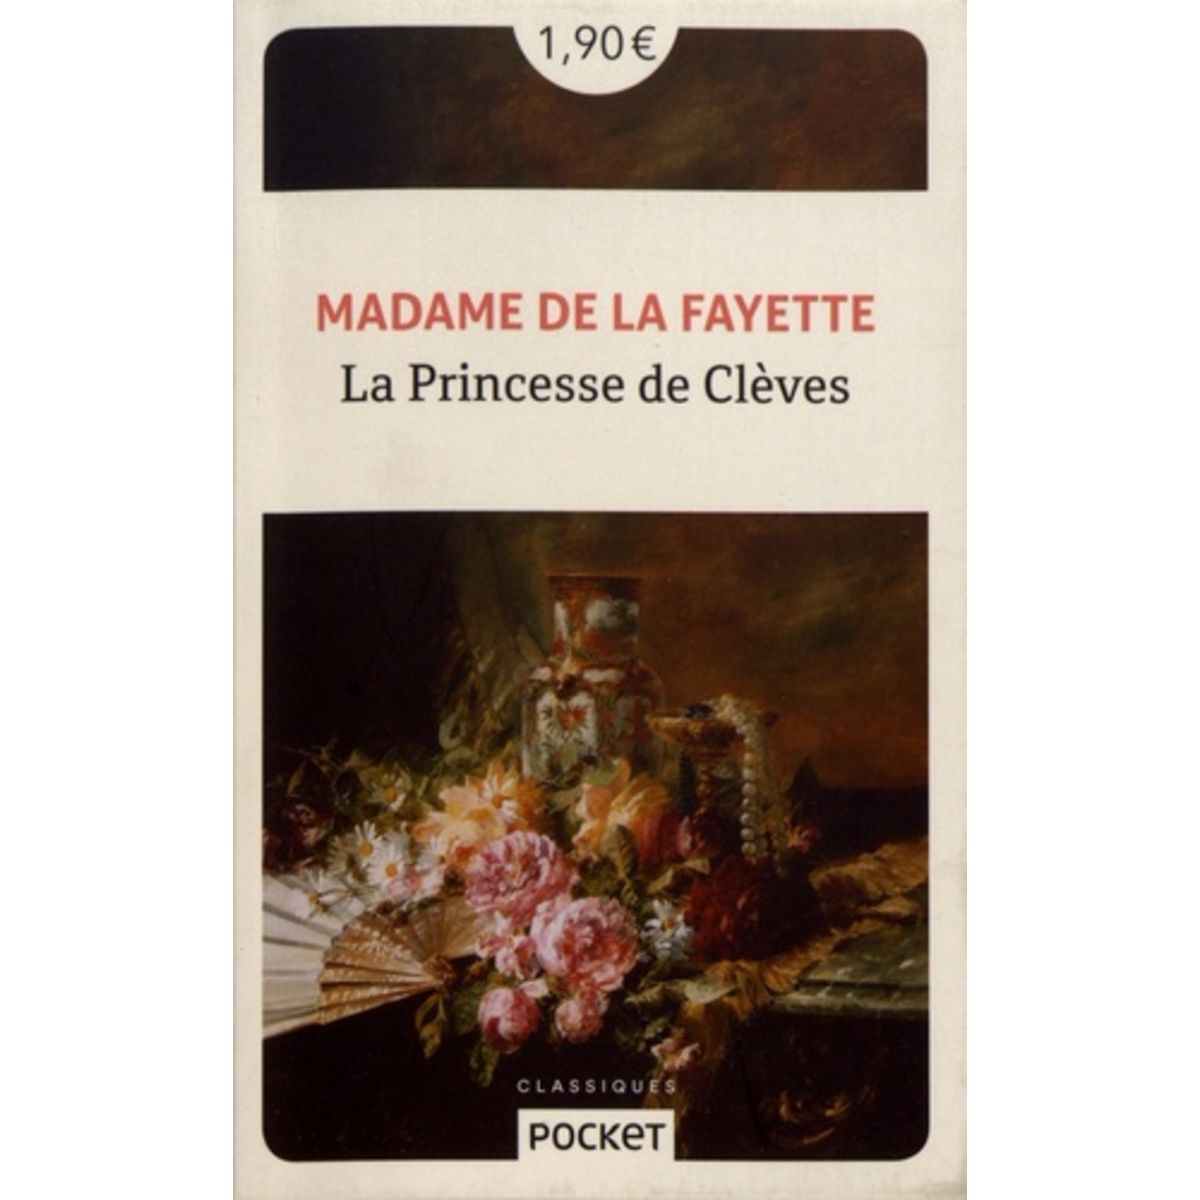  LA PRINCESSE DE CLEVES, Madame de Lafayette